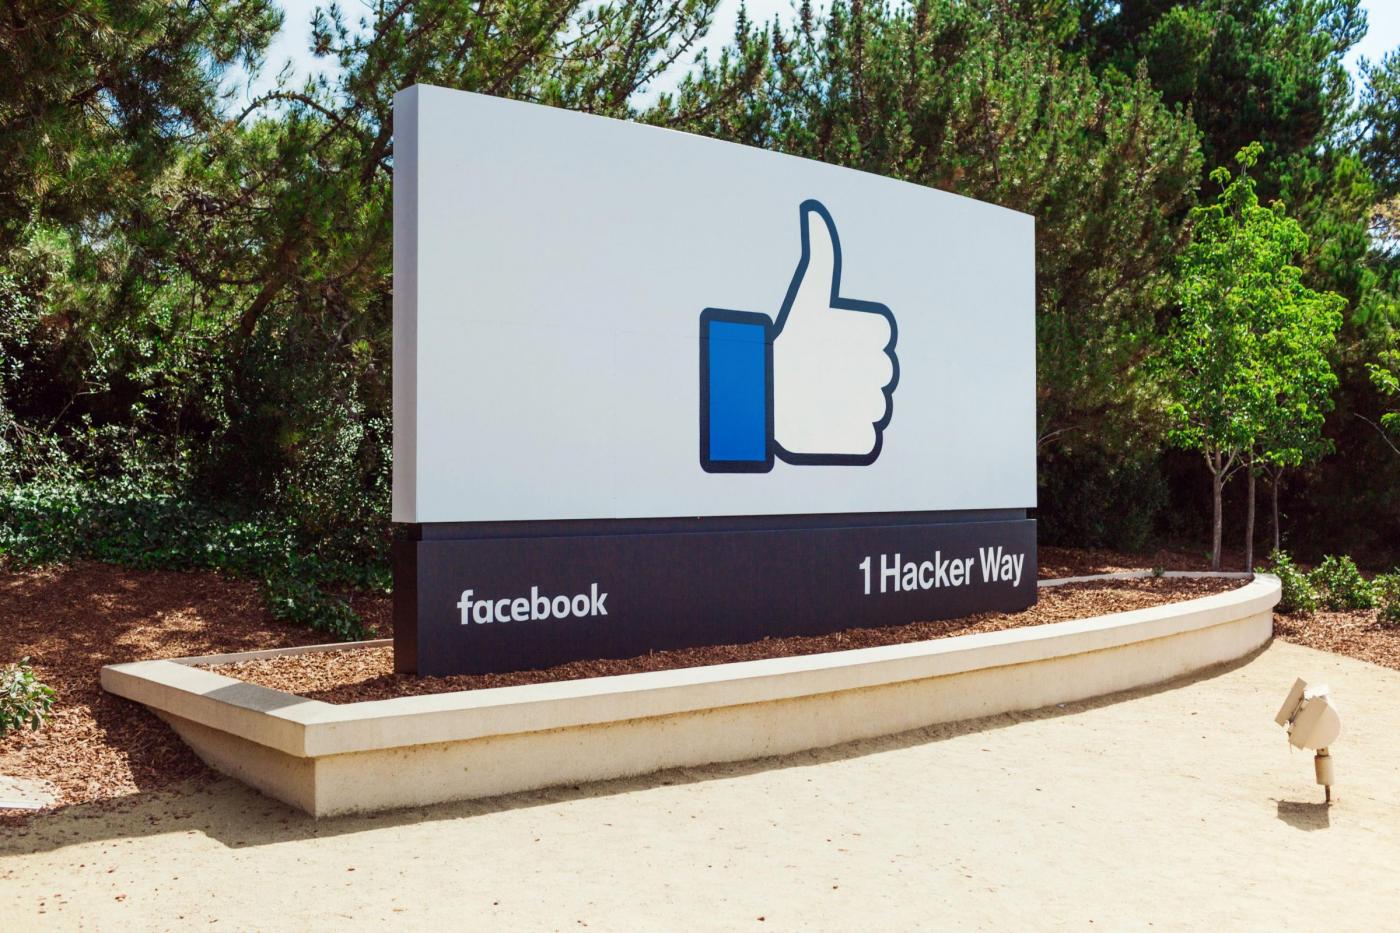 Facebook "like" button alternative